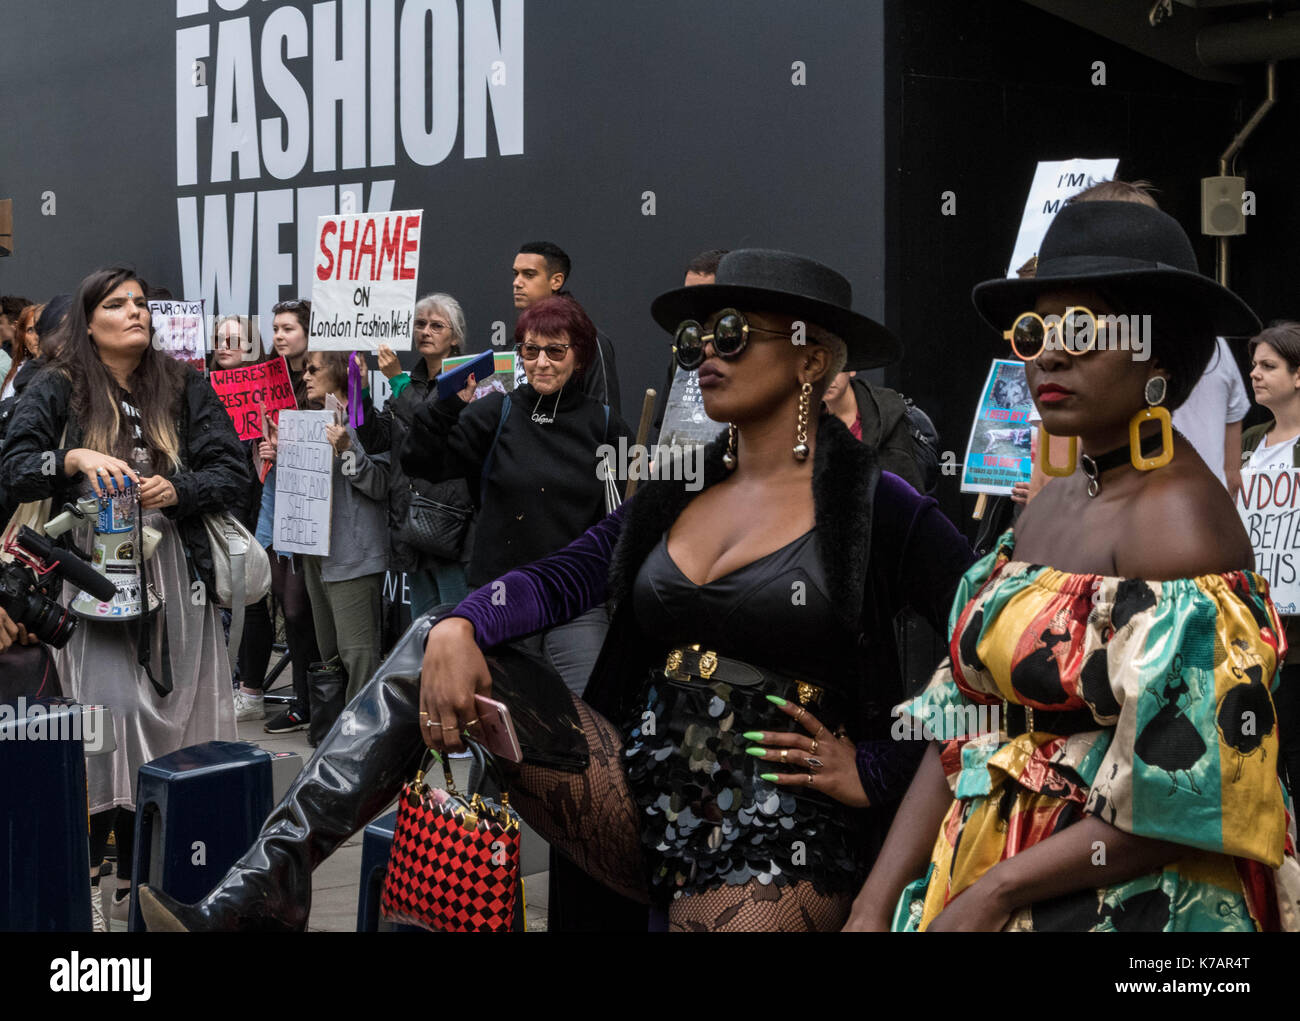 Londres, Reino Unido. 15 Sep, 2017. Los manifestantes anti pieles fuera de la Semana de la Moda de Londres en el Strand, Londres mientras fashionistas mostrar su crédito de moda: Ian Davidson/Alamy Live News Foto de stock